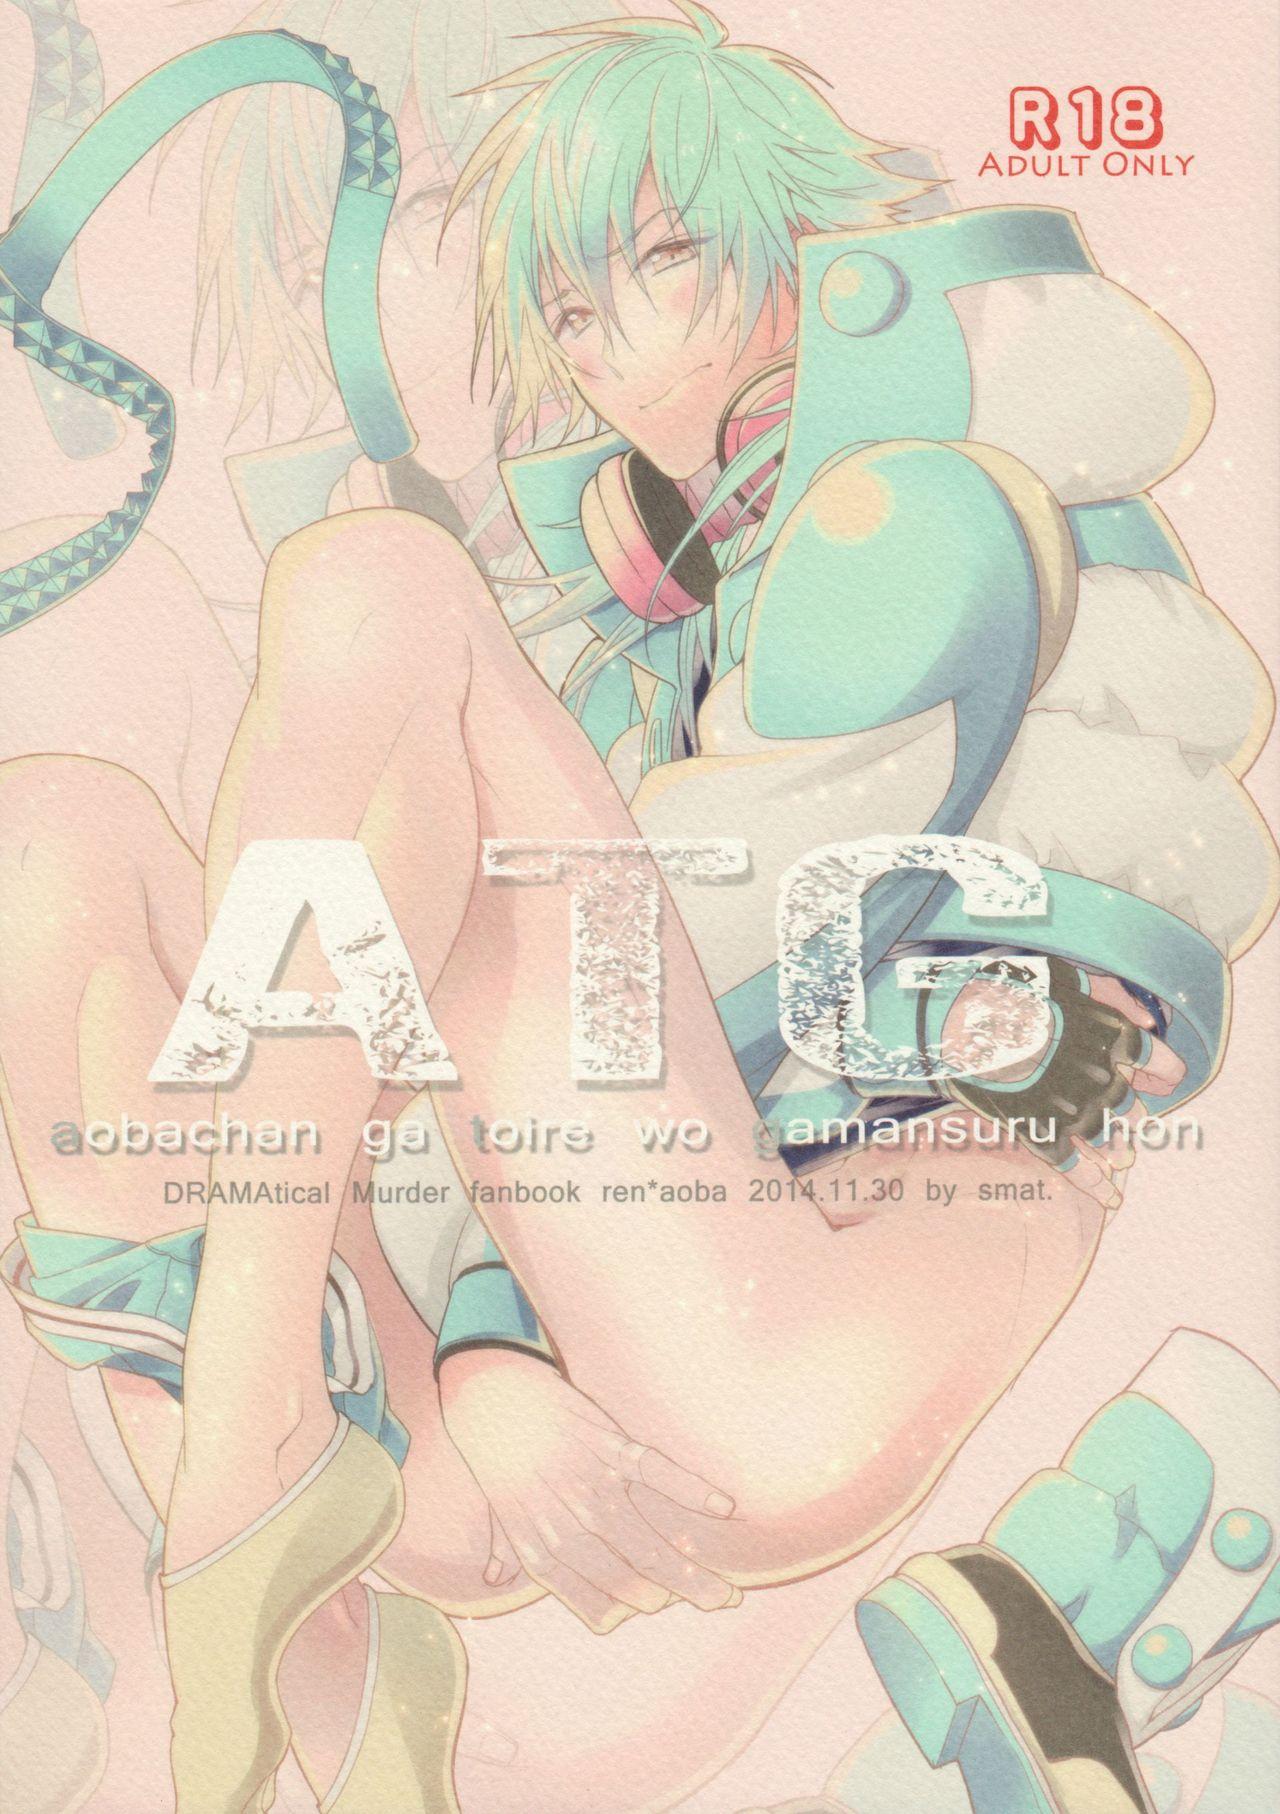 ATG 0